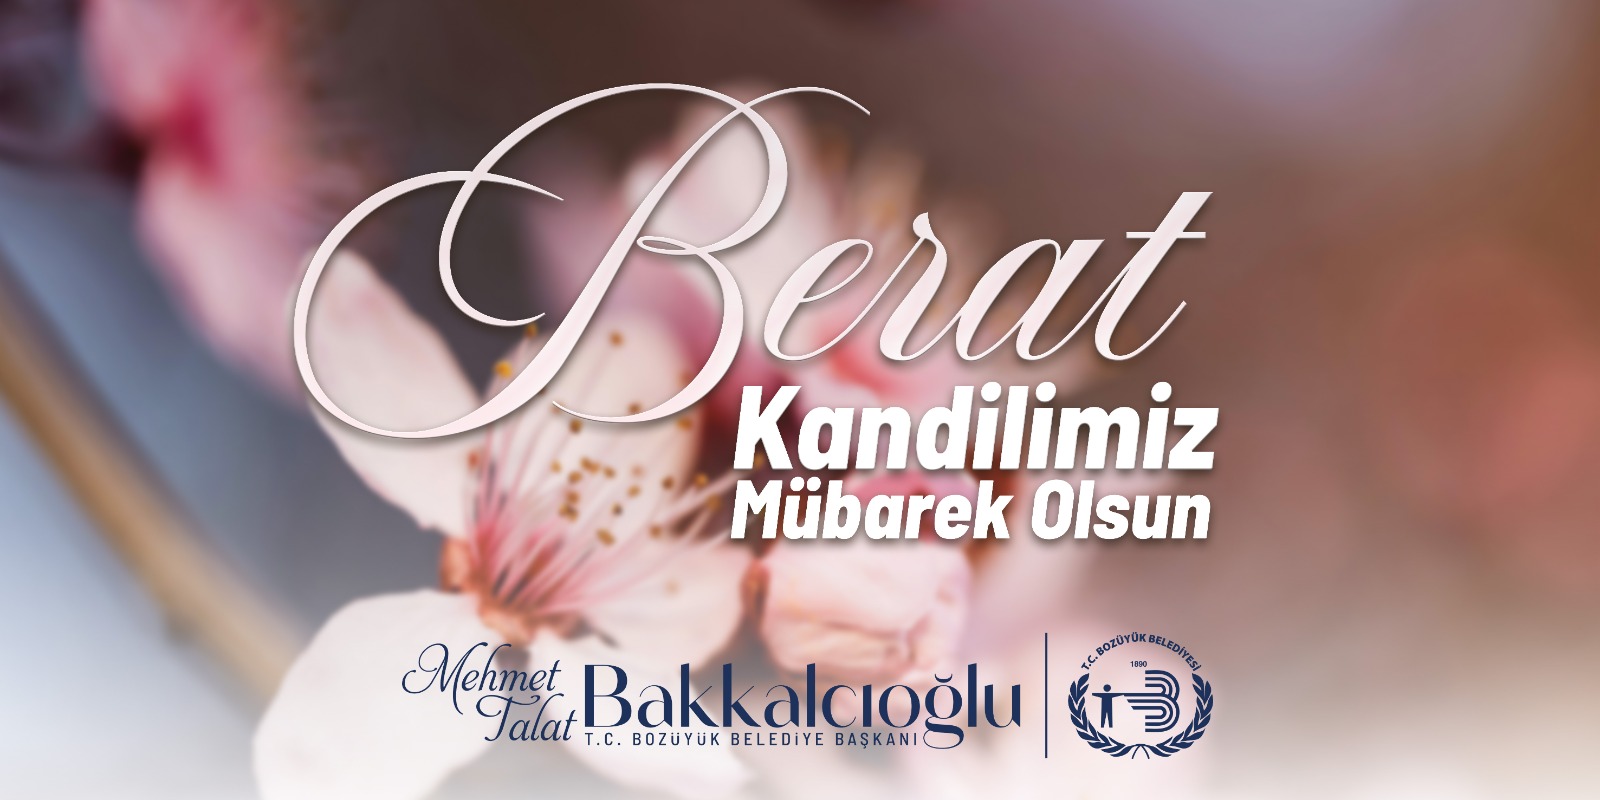 Berat Kandilimiz Mübarek Olsun | Bozüyük Belediye Başkanı M. Talat Bakkalcıoğlu